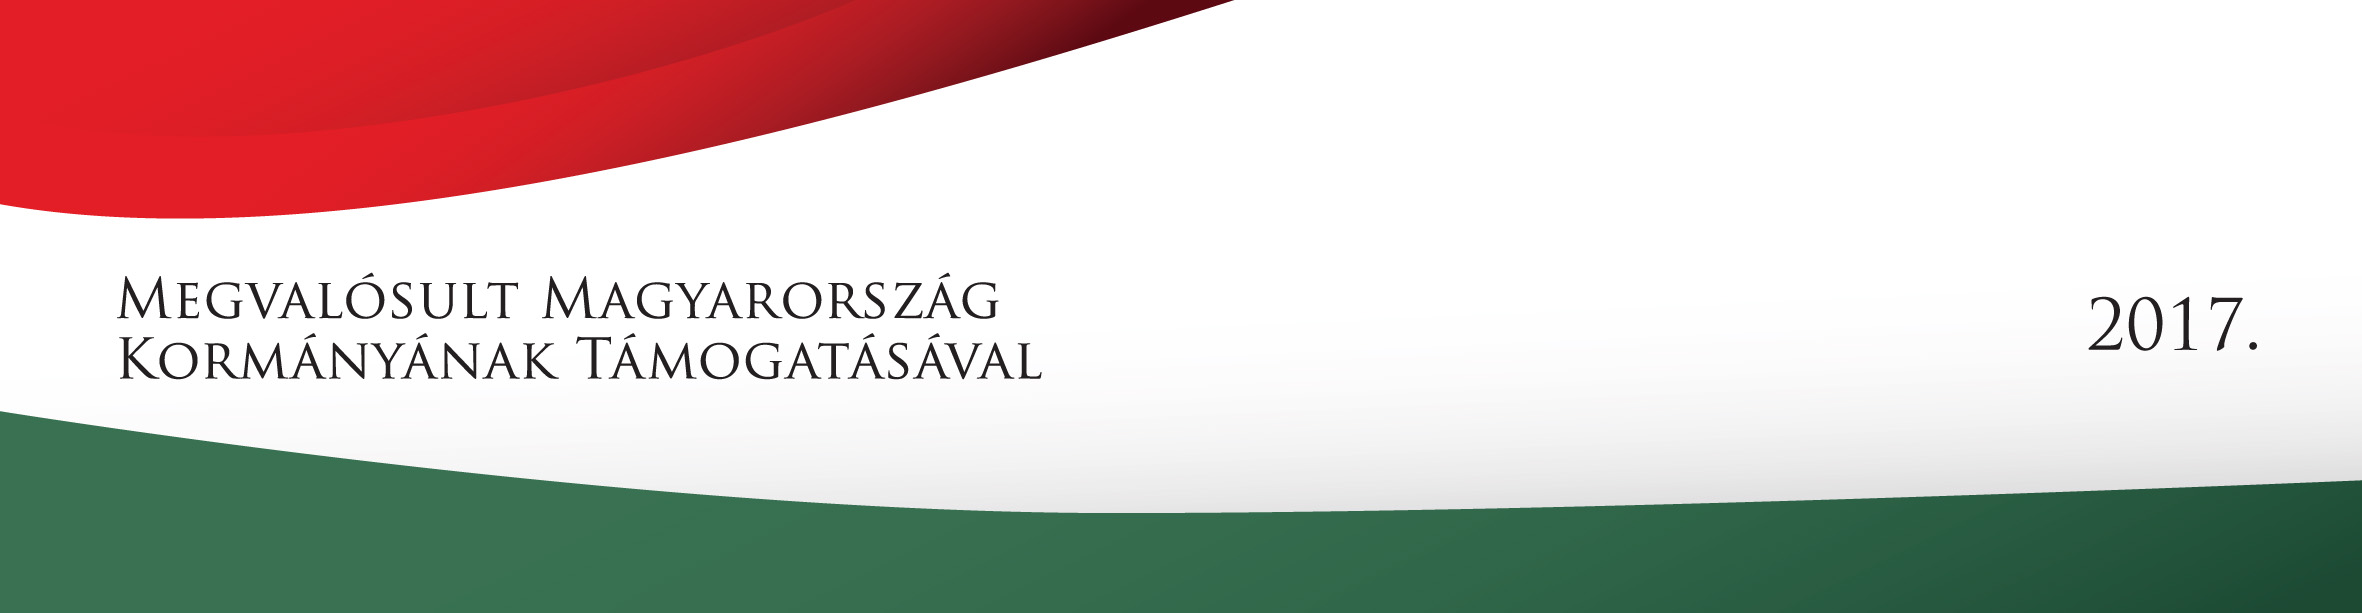 Megvalósult Magyarország Kormányának Támogatásával 2017 logó